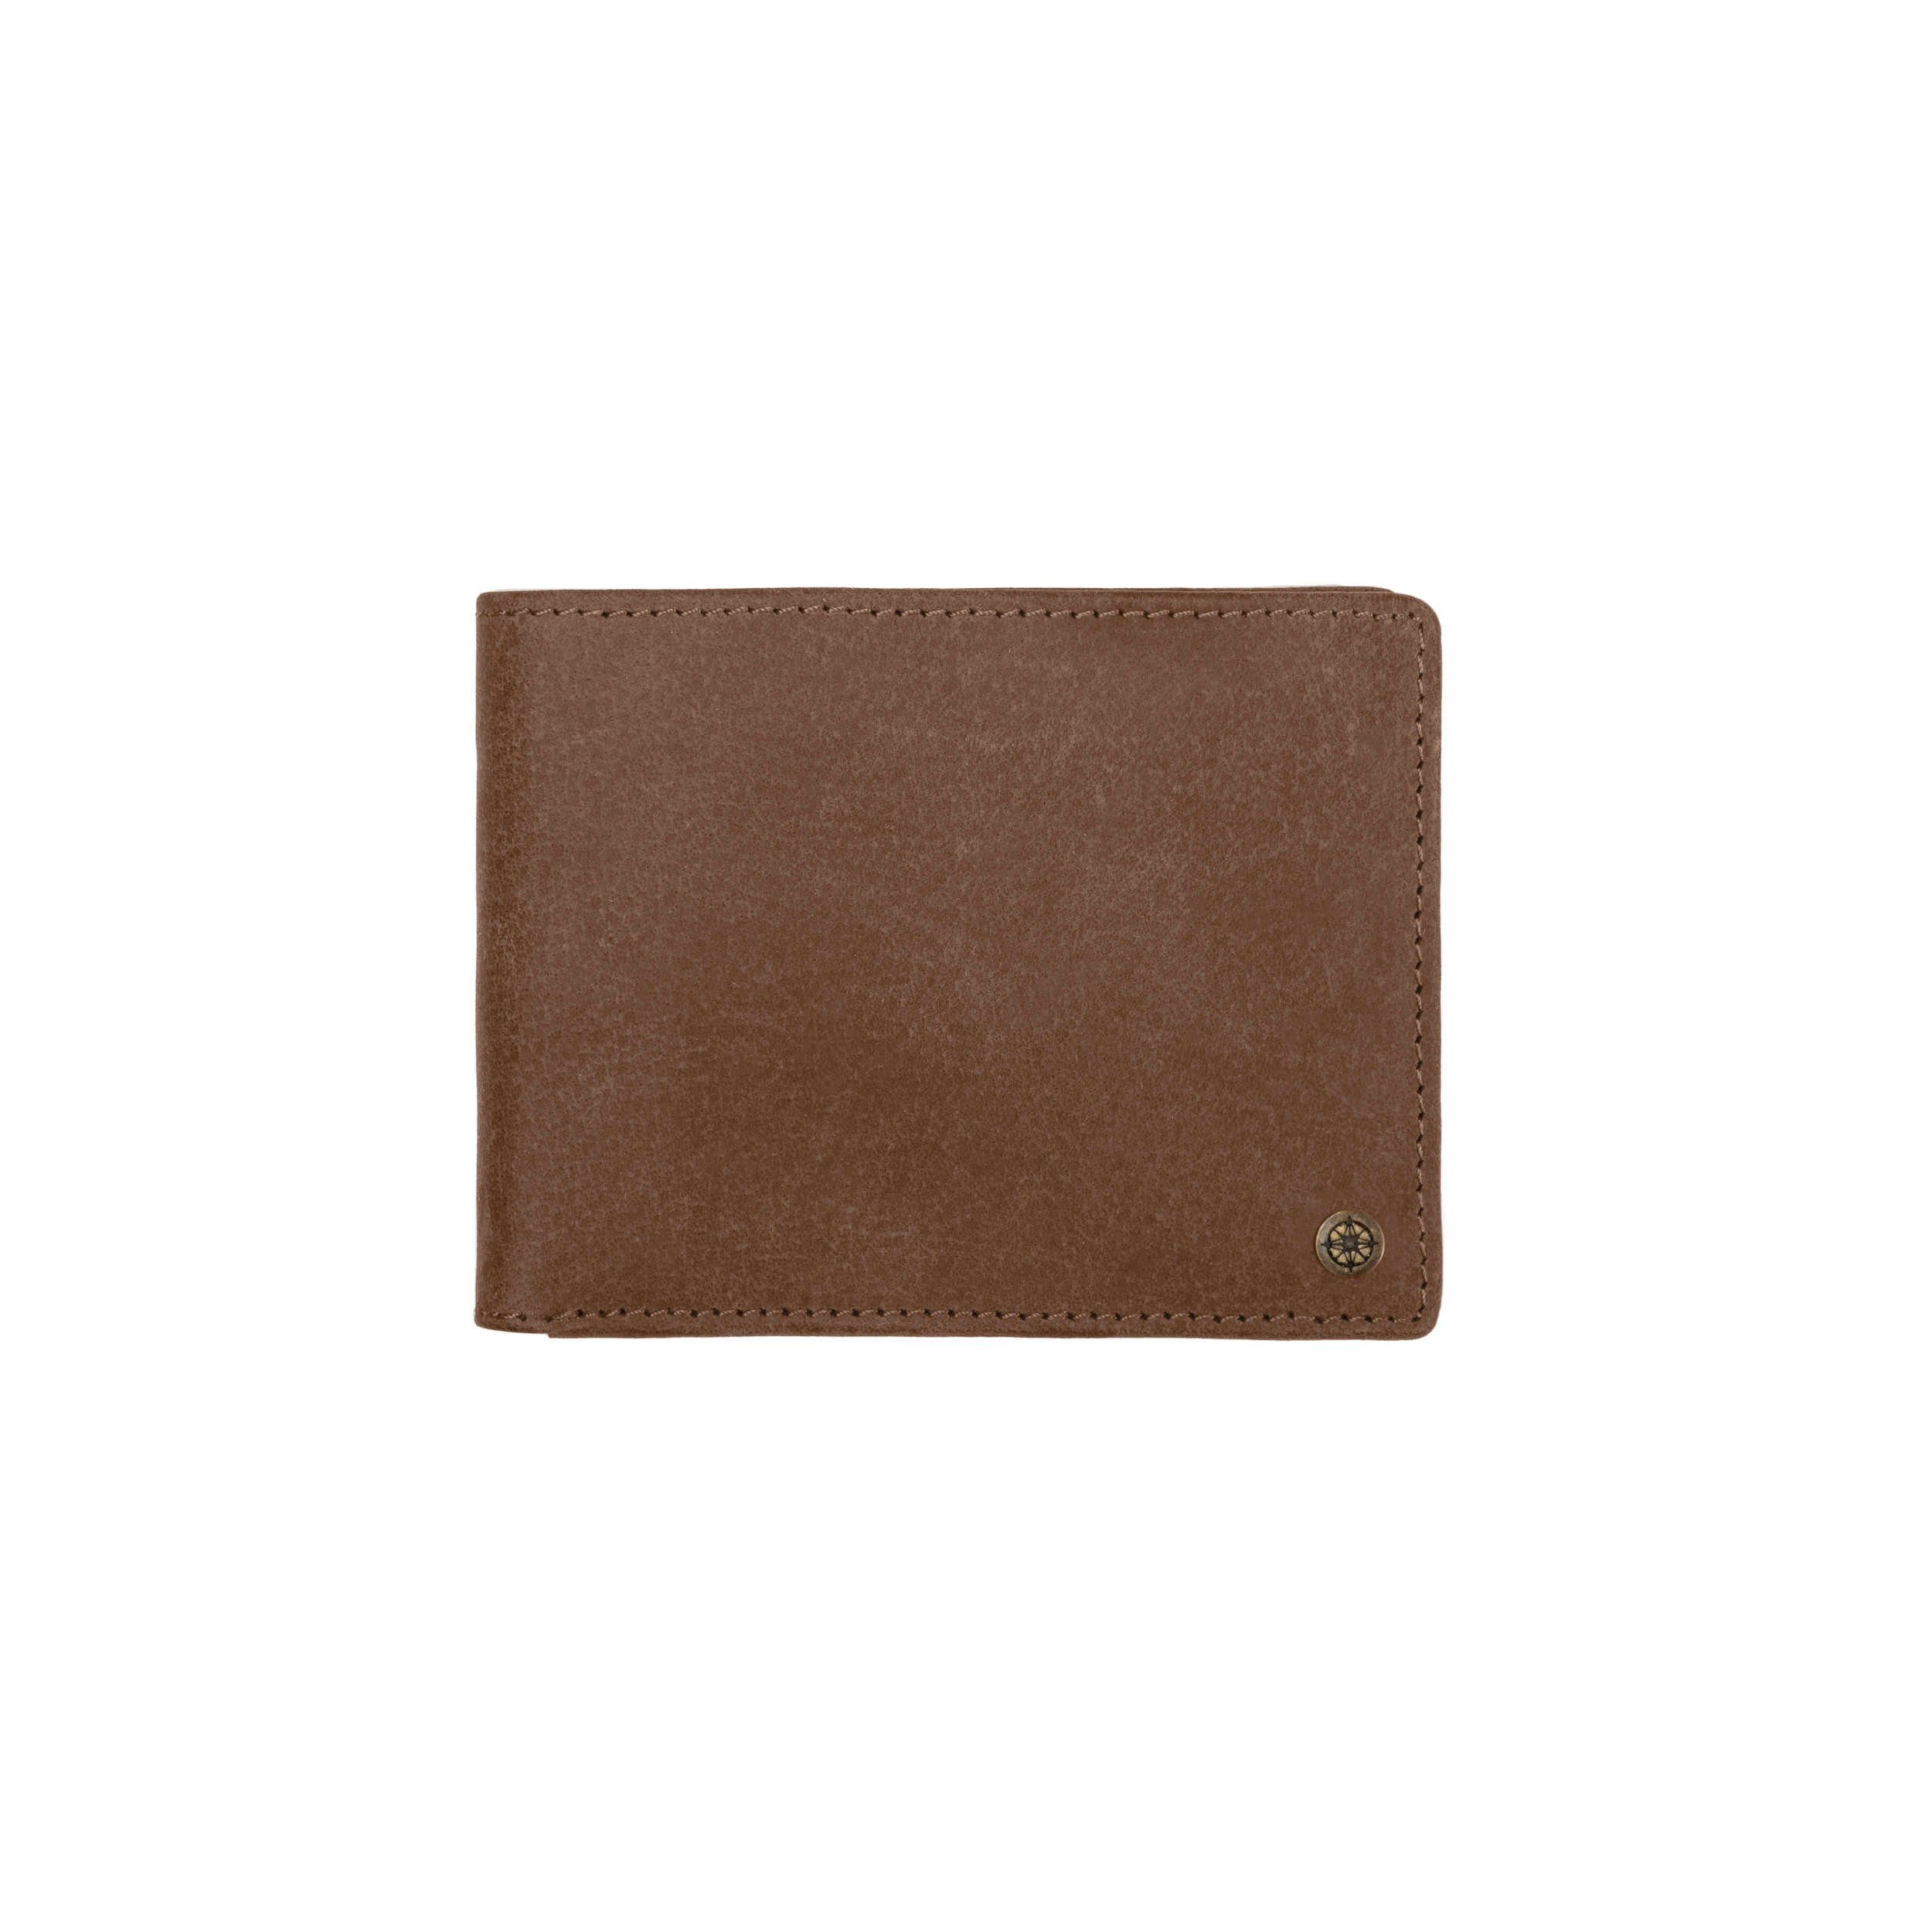 Brieftasche Leder hochwertige Schutz Geldbeutel Herren Gravur Geldbörse »Alan« DRAKENSBERG RFID mit Havanna-Braun, aus und